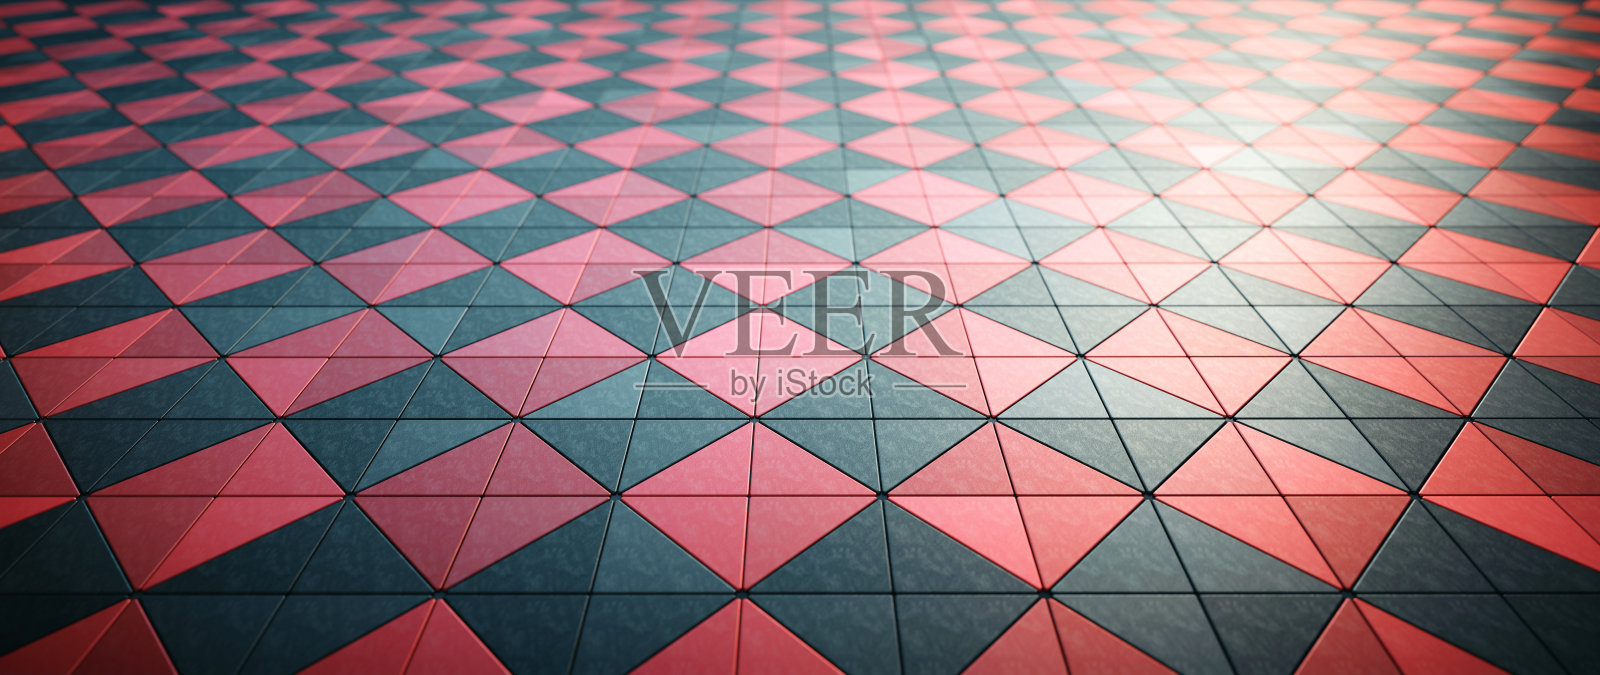 闪亮的黑色和红色瓷砖地板在格子图案-低角度递减的视角照片摄影图片